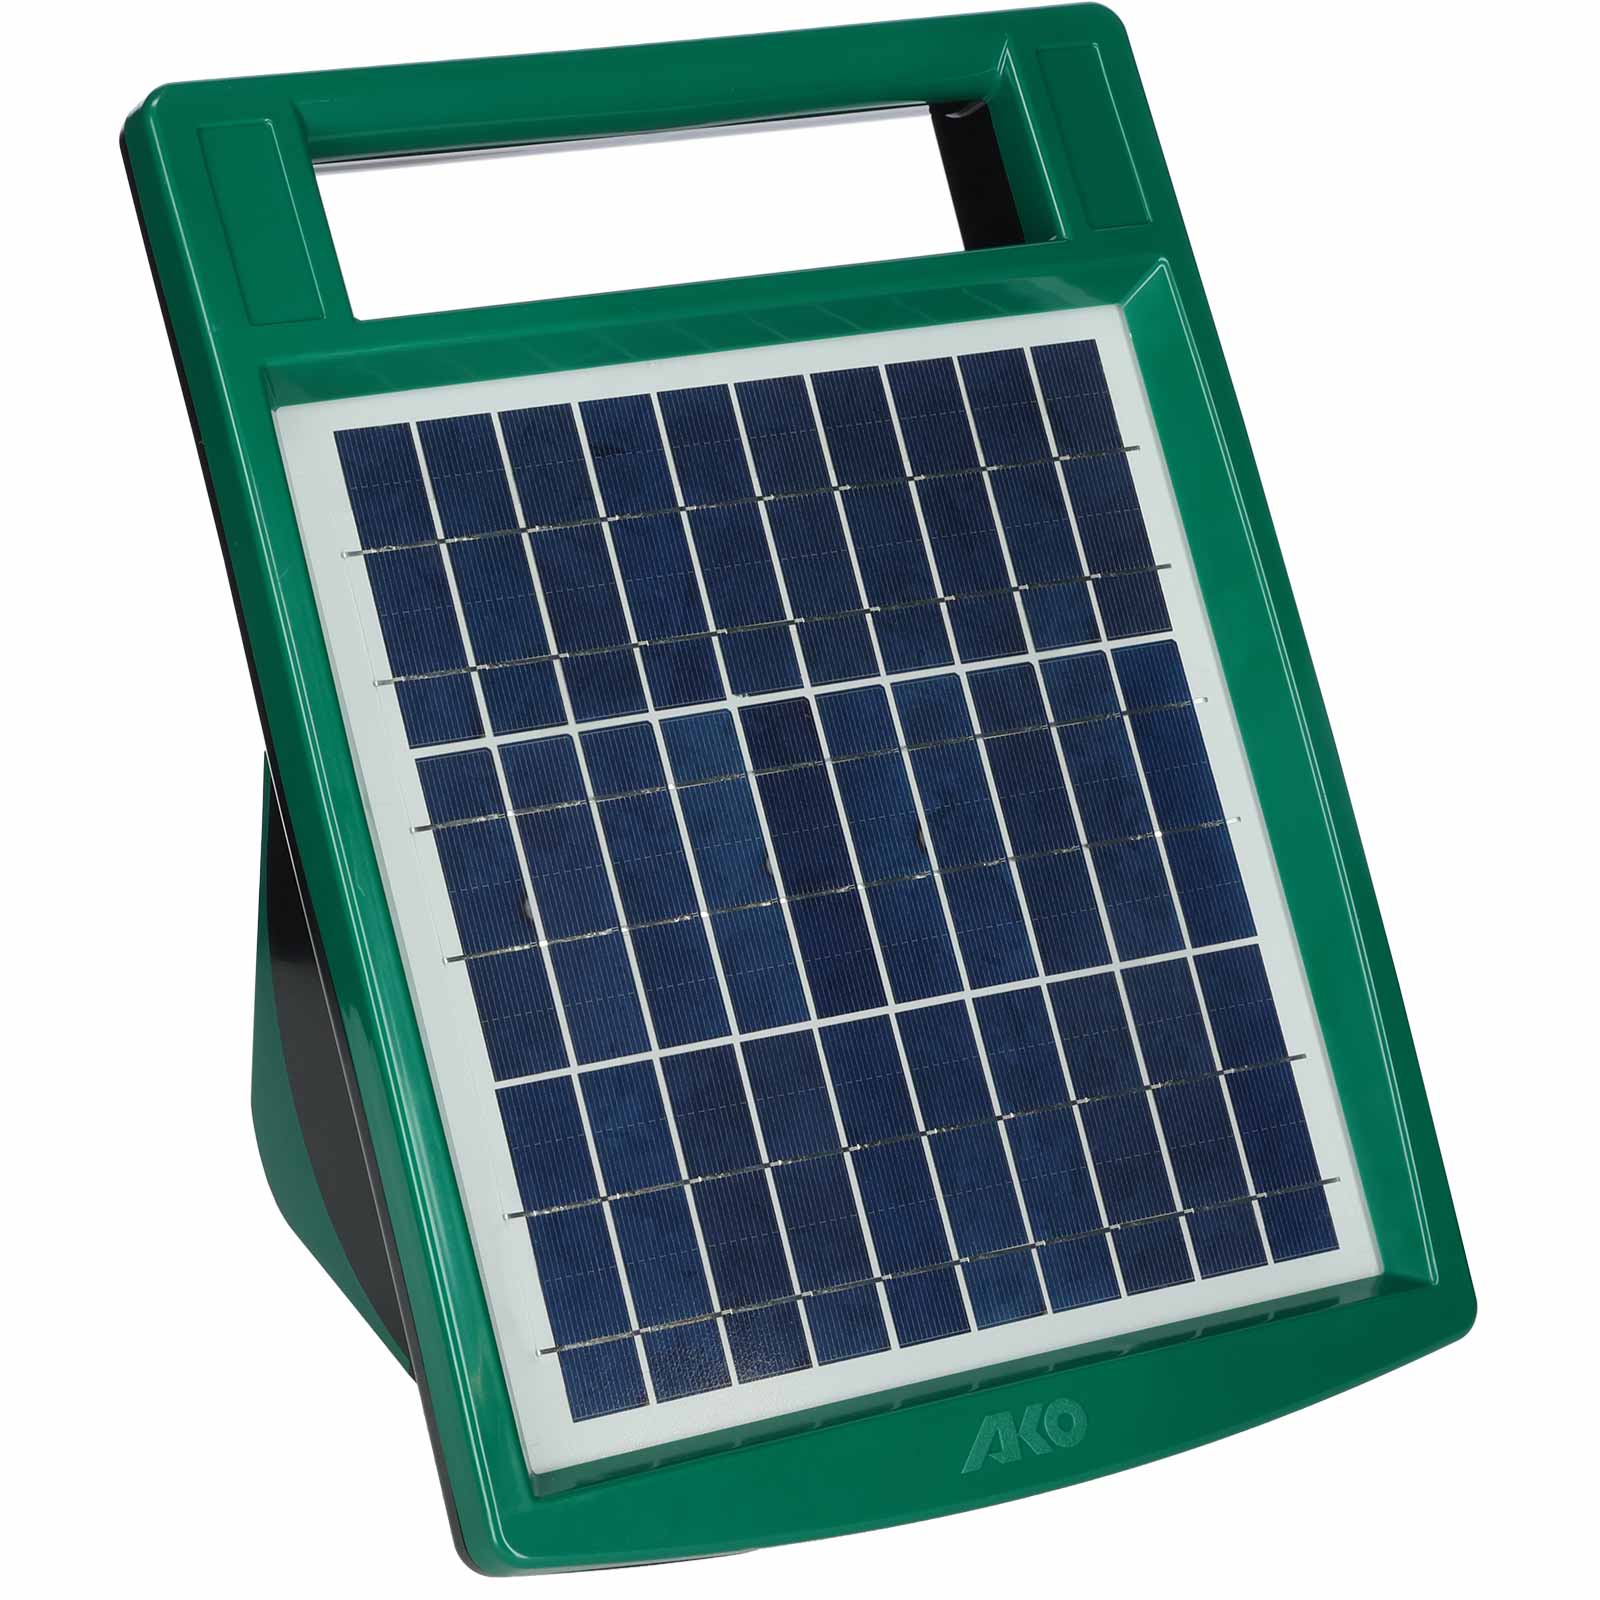 Électrificateur solaire Ako Sun Power S 500 8 Watt 12V, 0,75 Joule